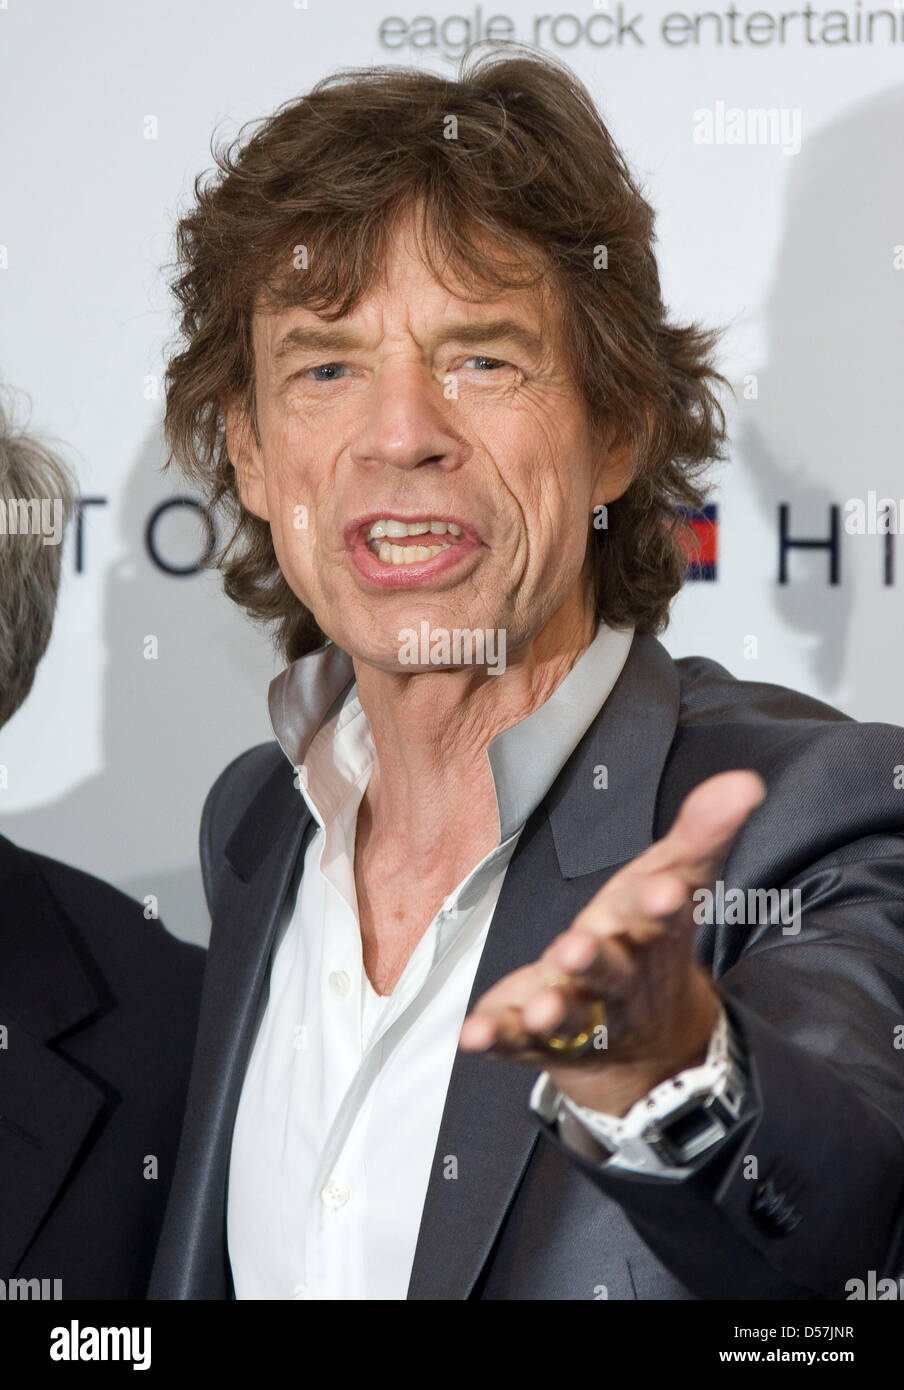 Le chanteur britannique Mick Jagger des Rolling Stones pose au cours de la  photo sur le film 'Stones in Exile' au 63e Festival du Film de Cannes,  France, 19 mai 2010. Photo :